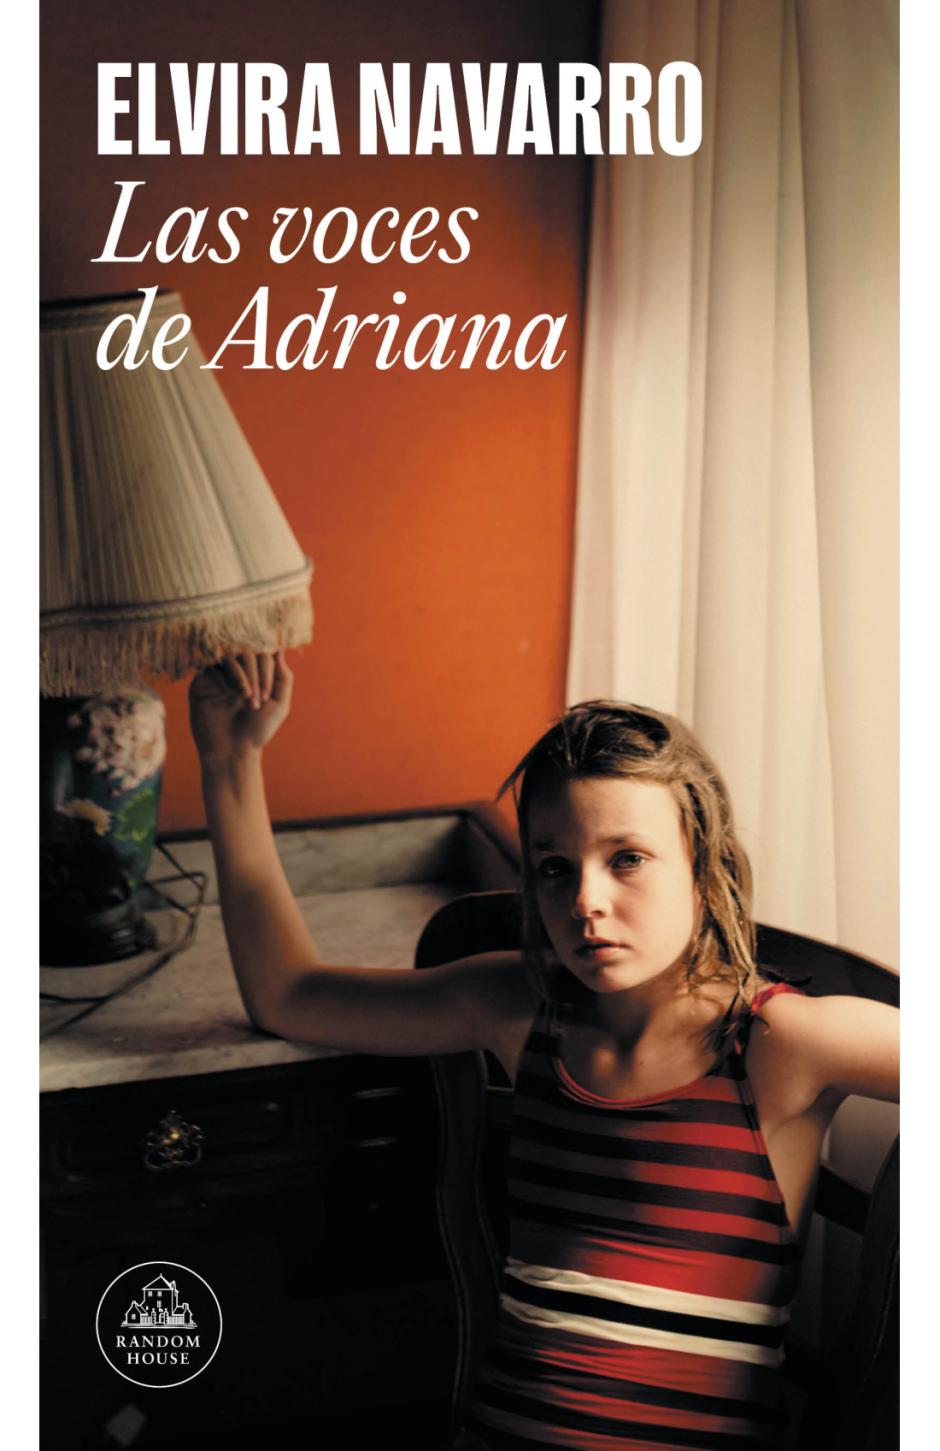 'Las voces de Adriana' es el nuevo libro de Elvira Navarro